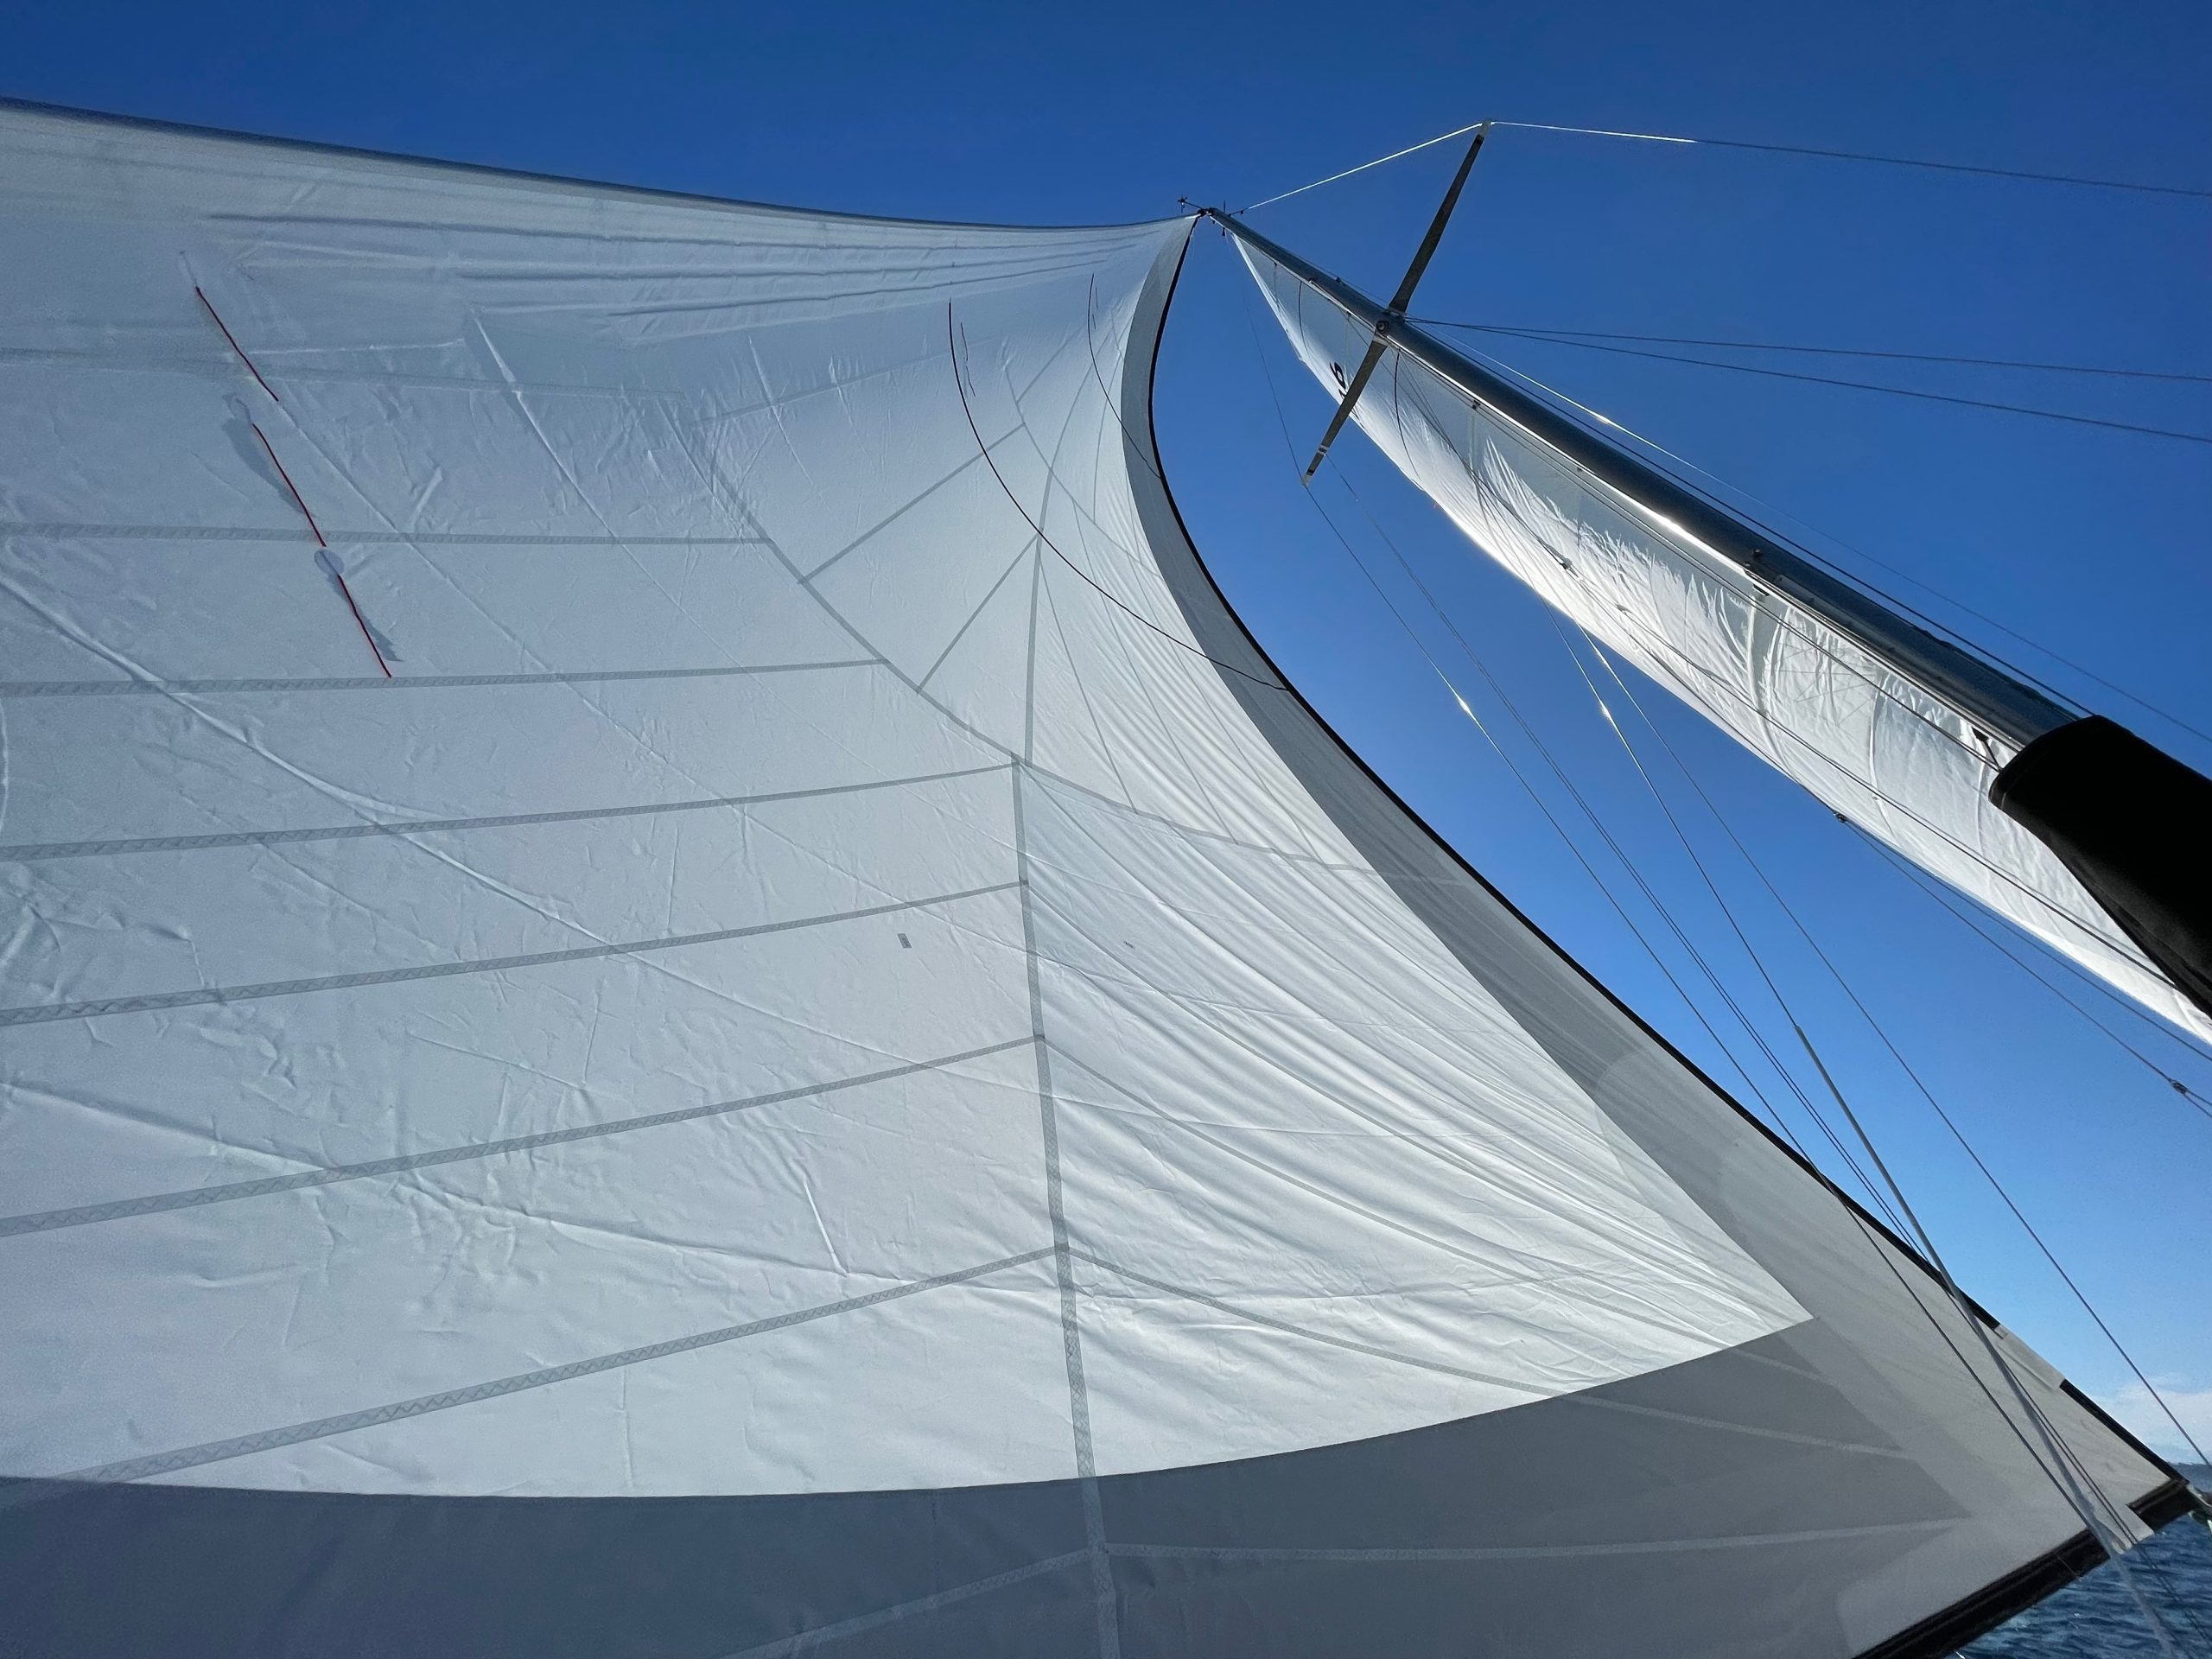 New white tri-radial dacron sails!